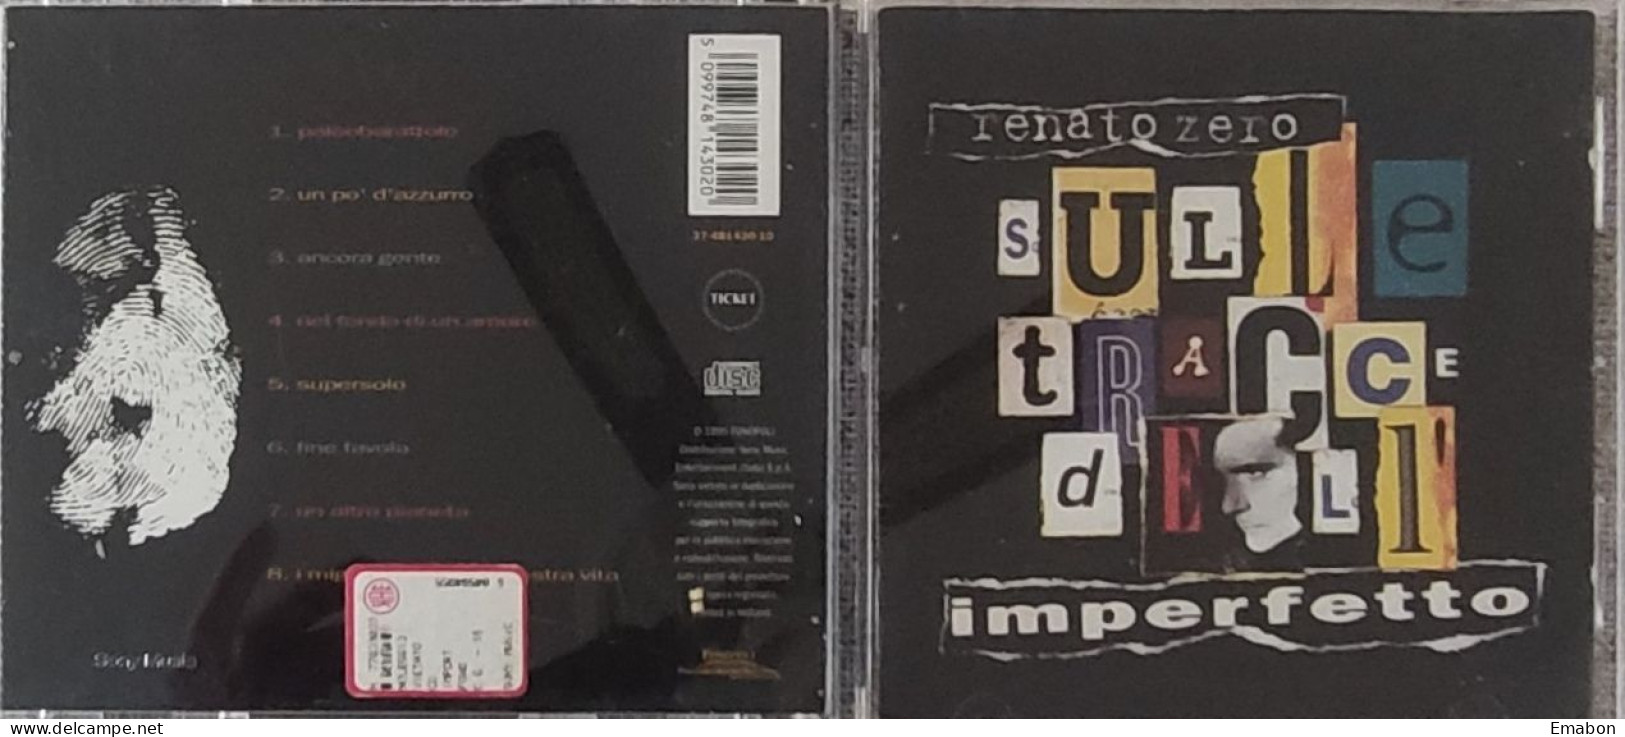 BORGATTA - Cd RENATO ZERO - SULLE TRACCE DELL' IMPERFETTO  - FONOPOLI 1995  -  USATO In Buono Stato - Other - Italian Music